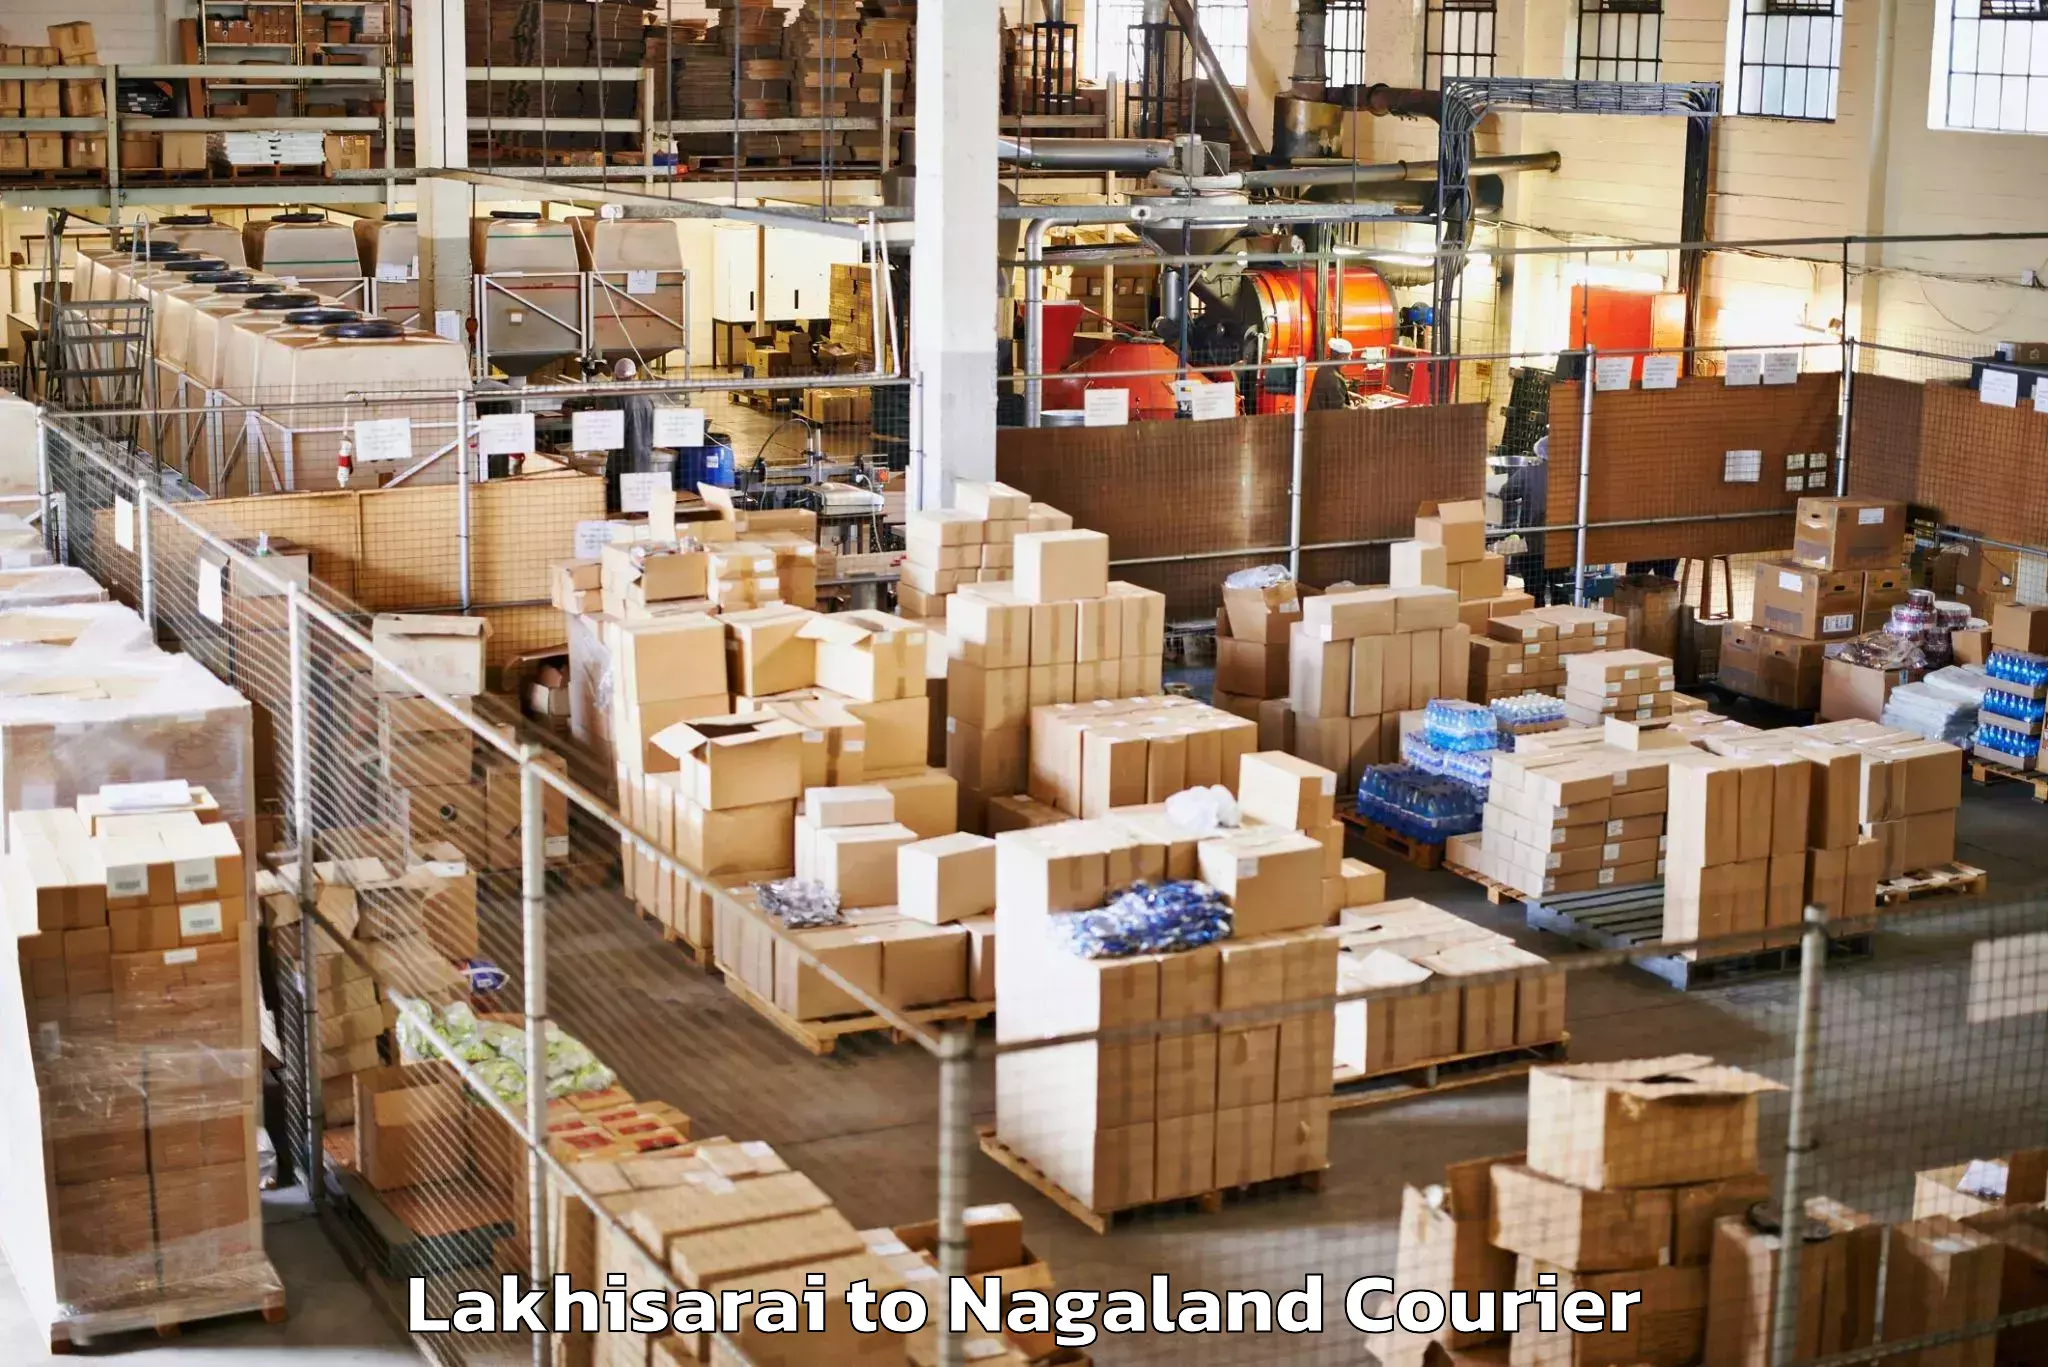 Baggage transport scheduler Lakhisarai to Nagaland